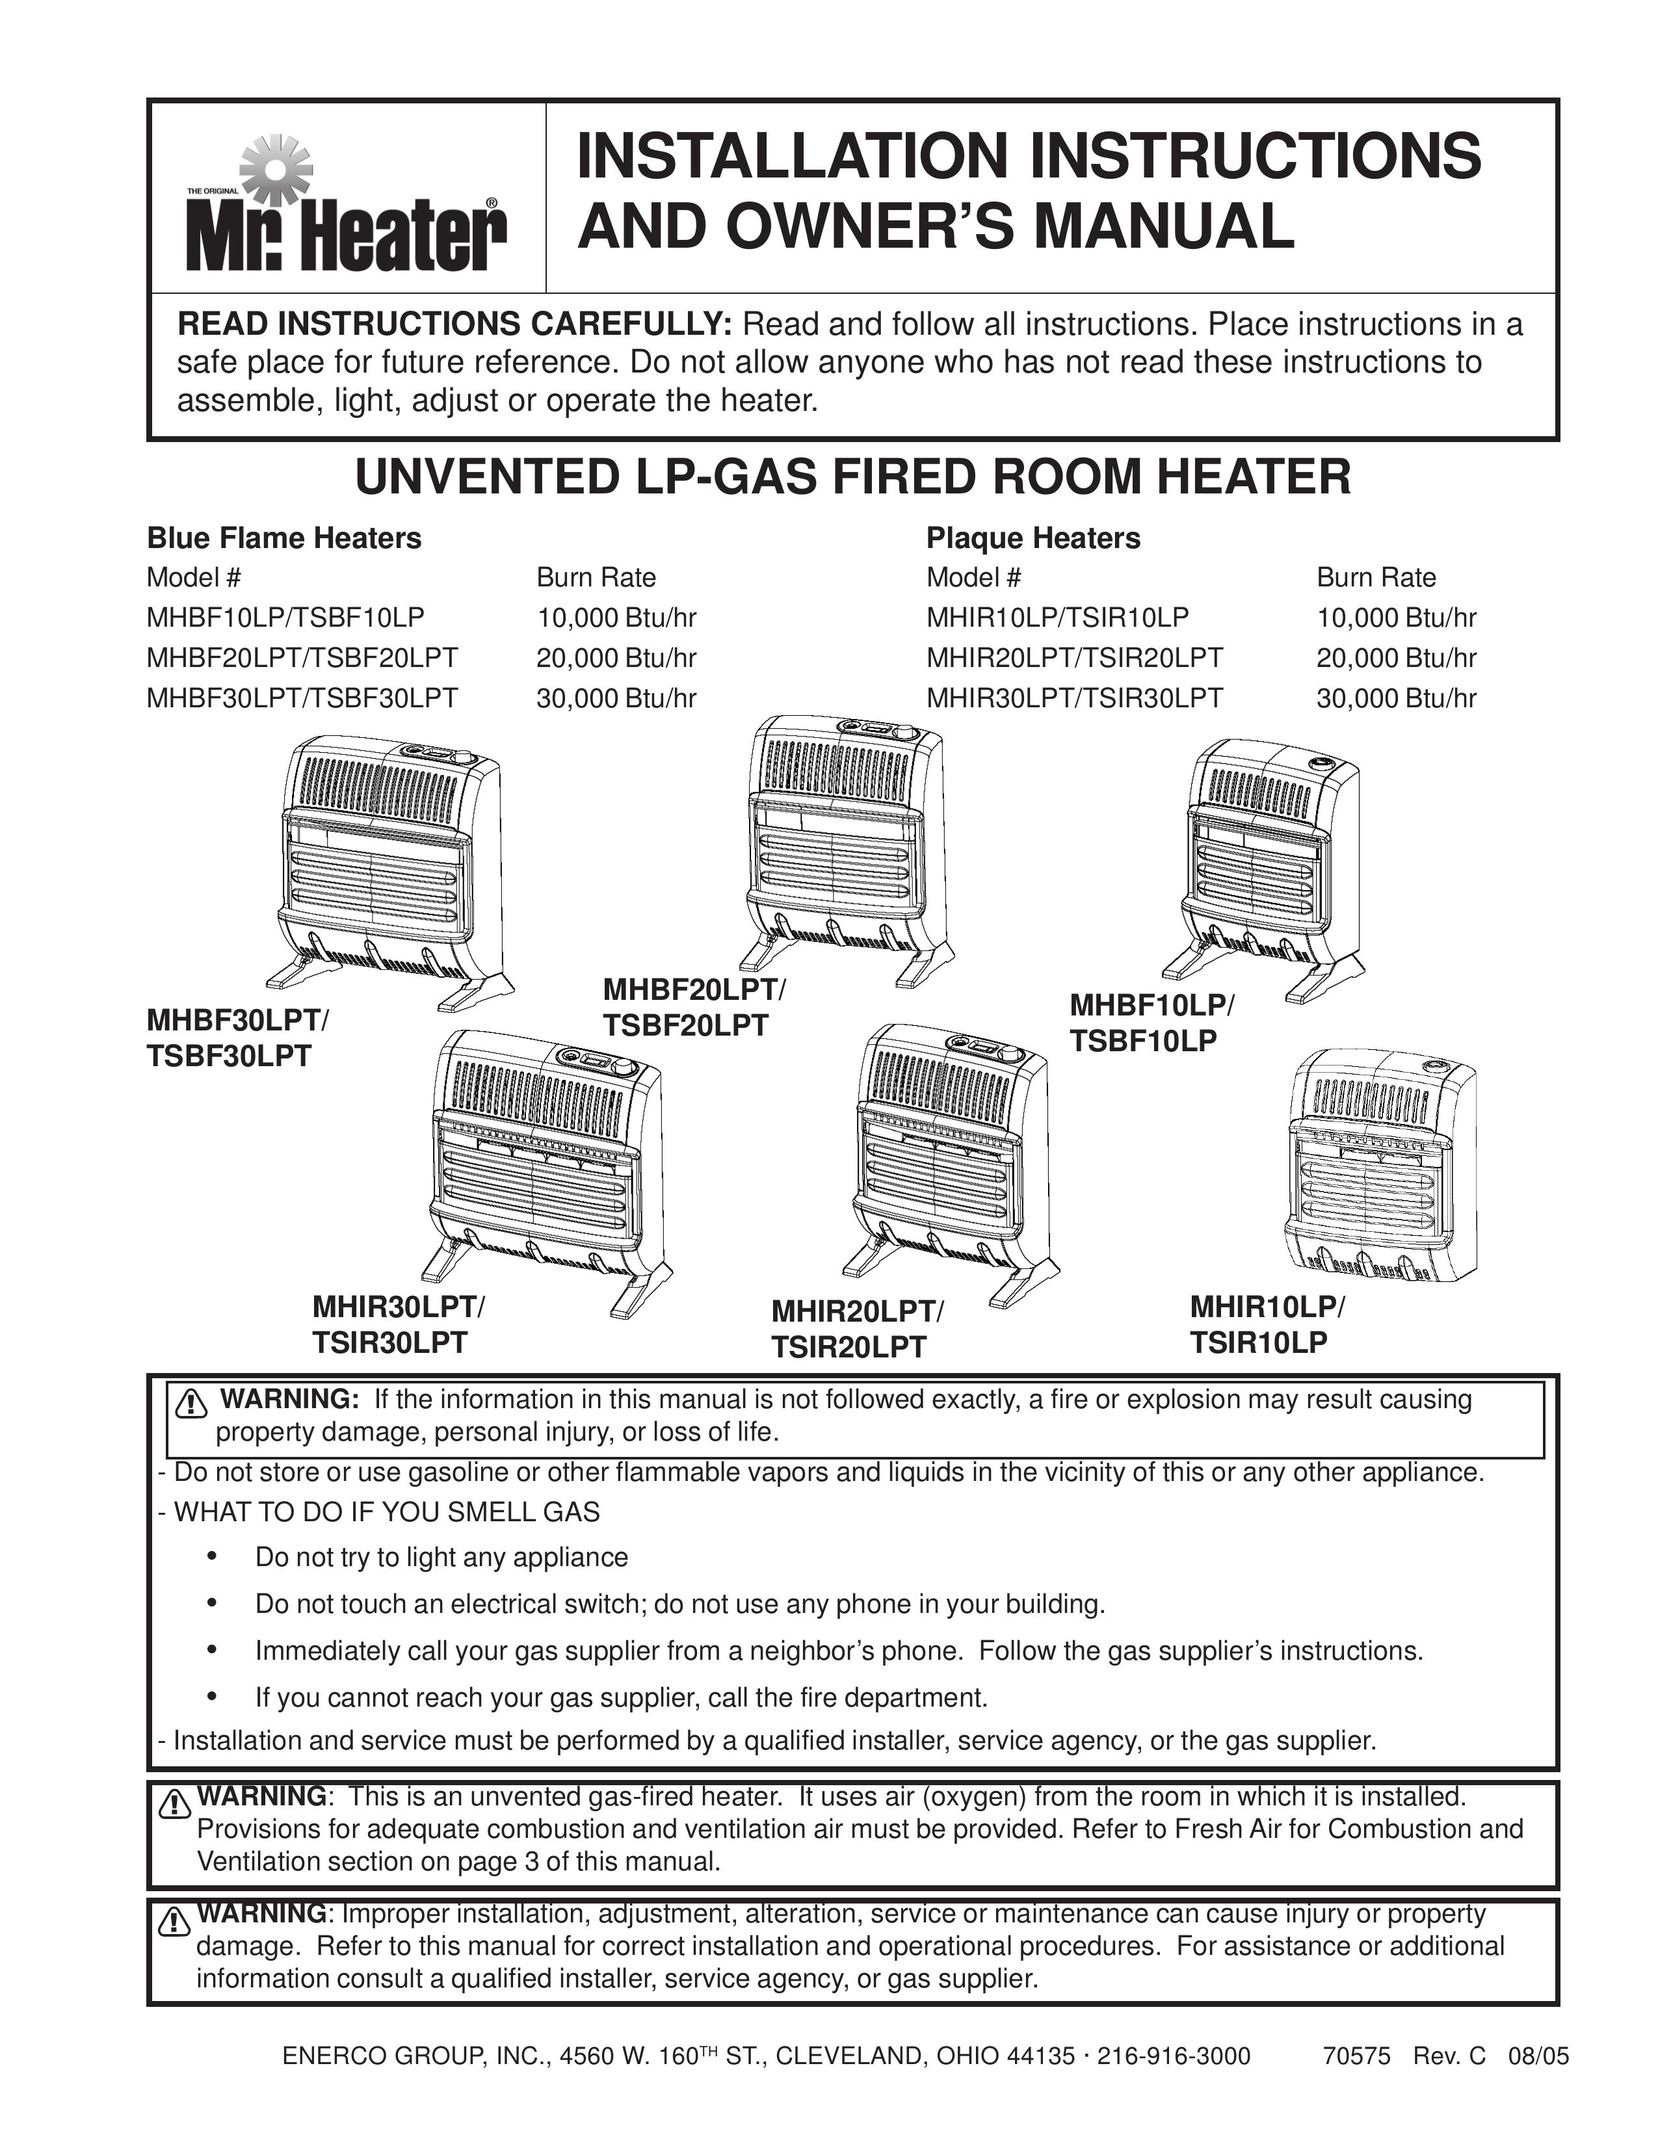 Enerco MHIR20LPT Electric Heater User Manual